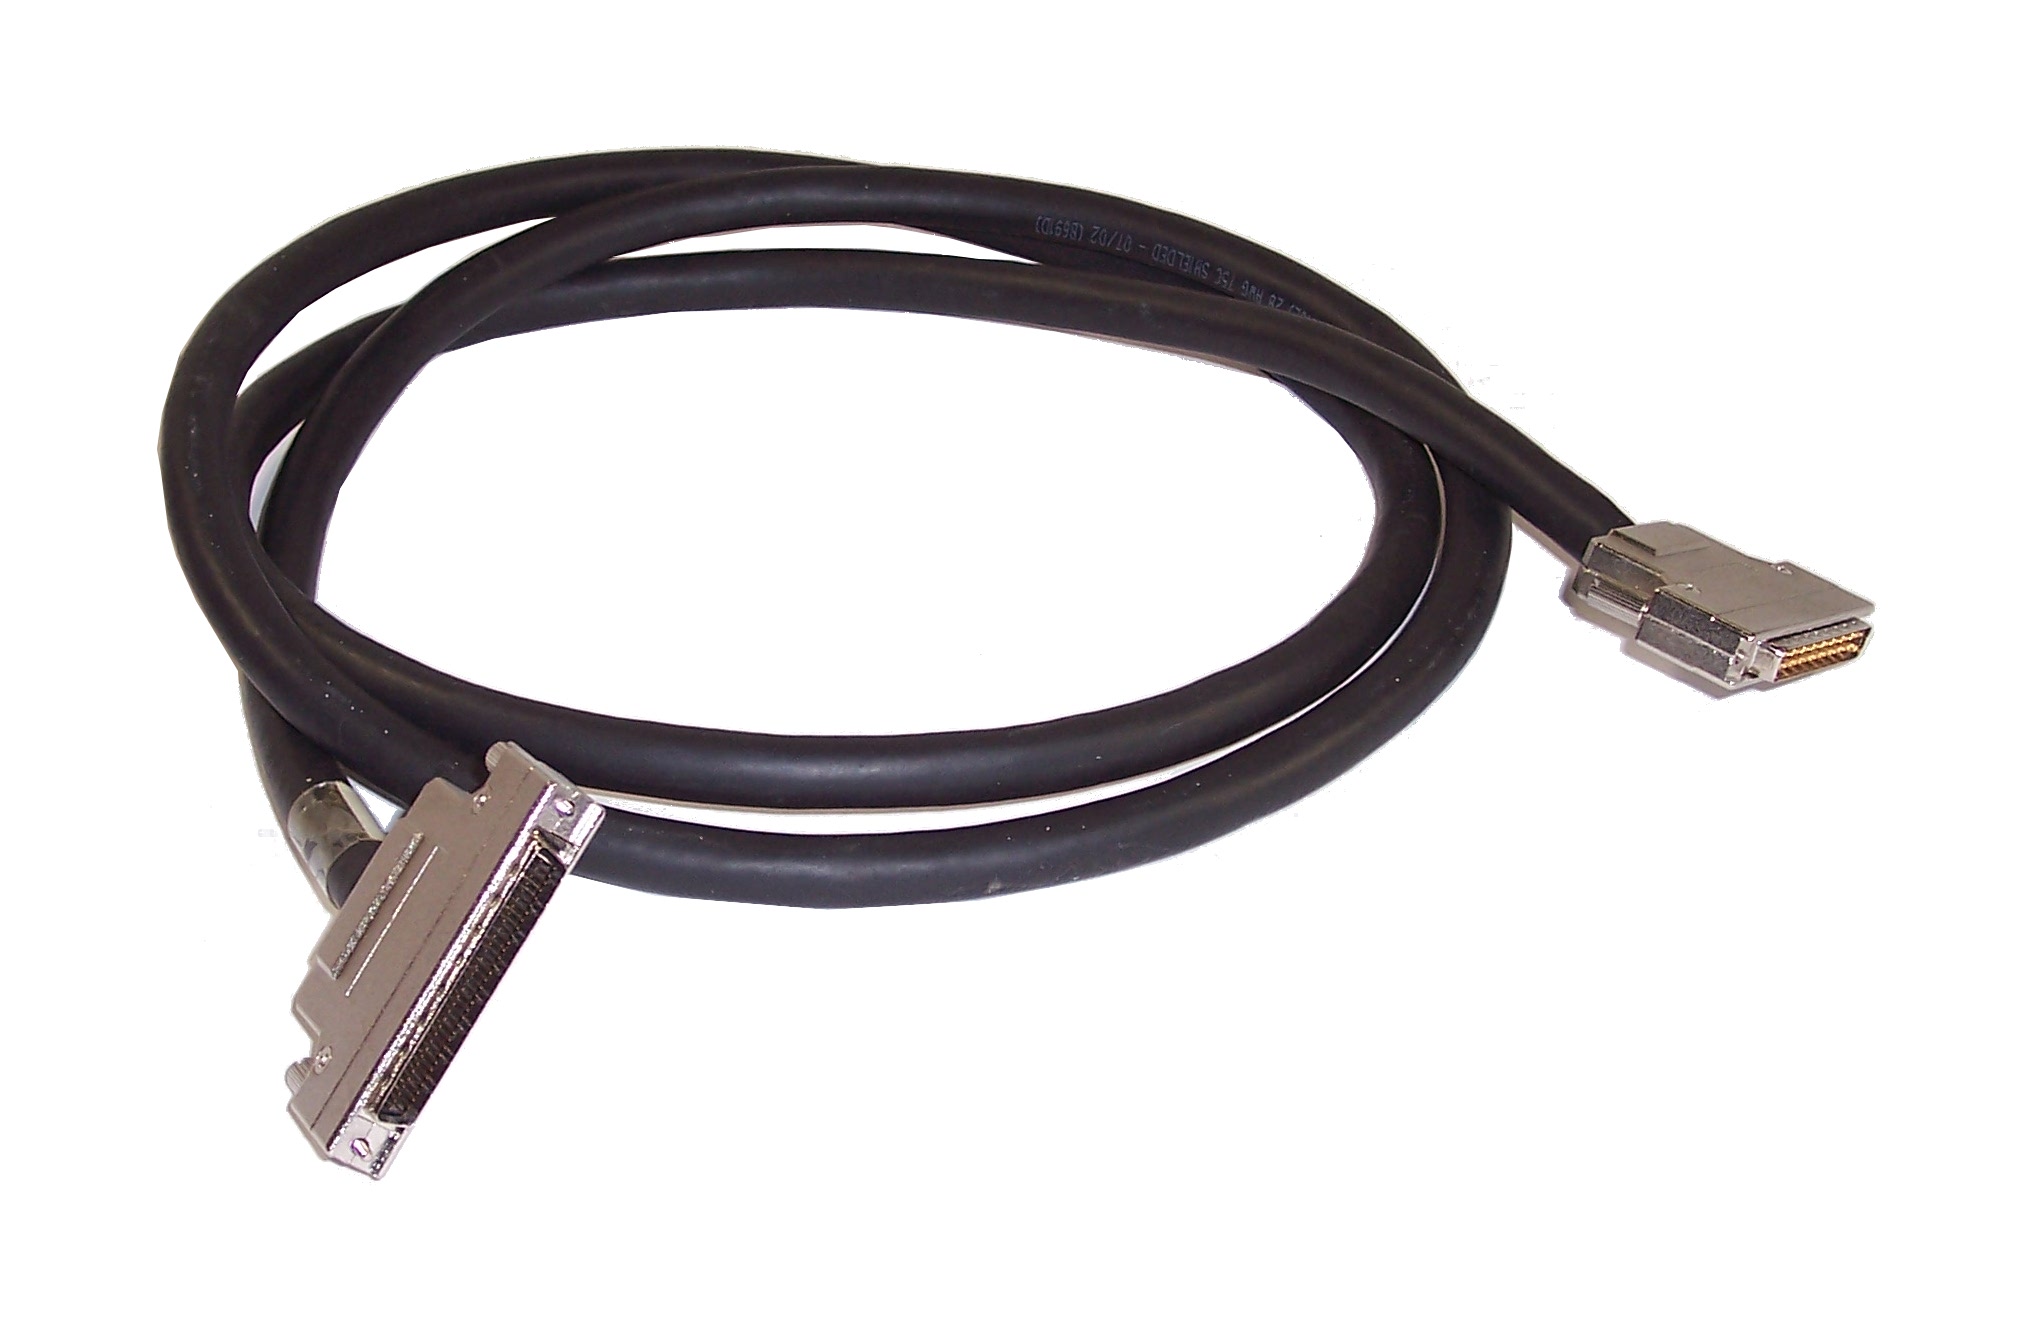 External SCSI cable